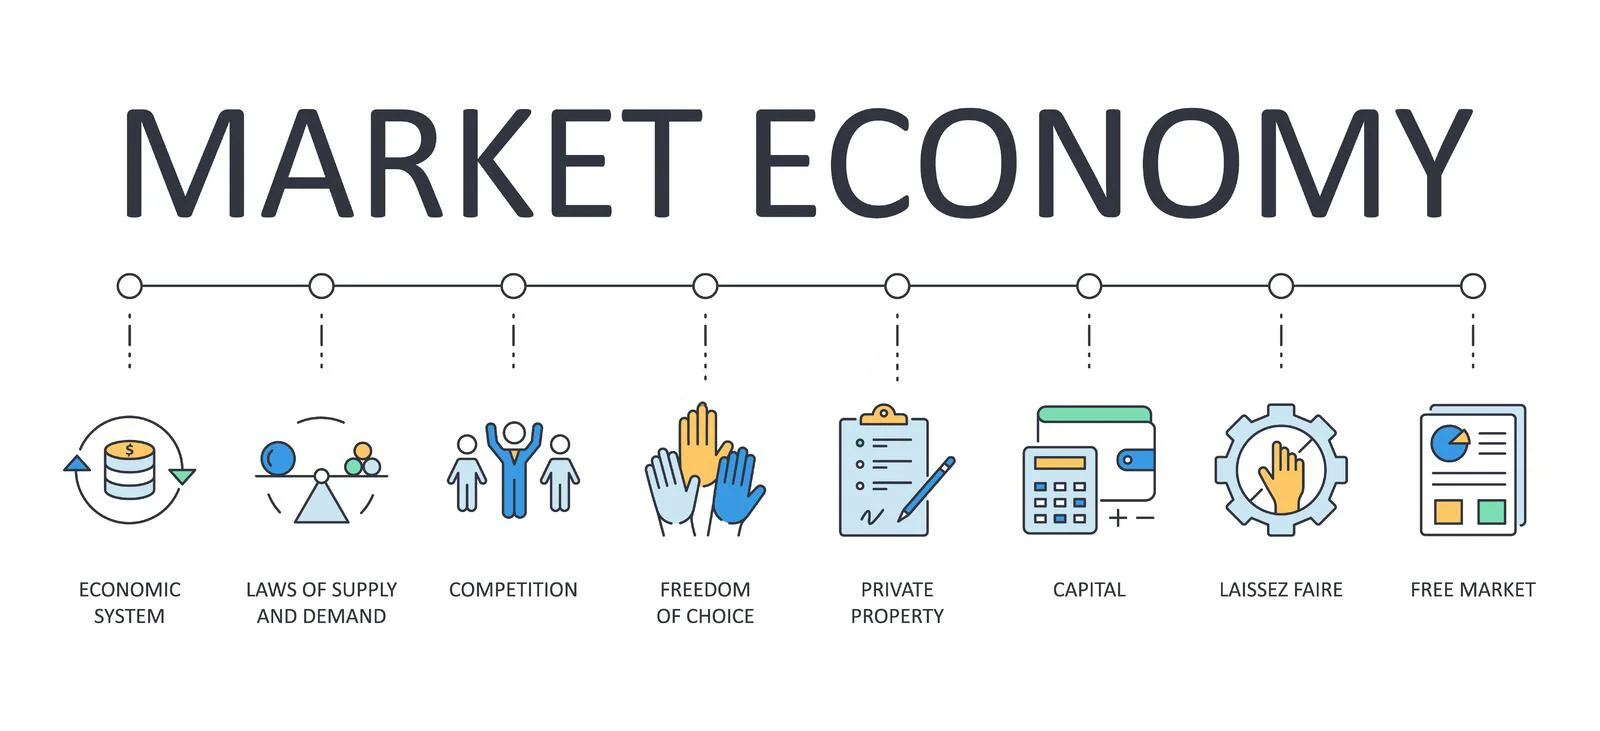 سیستم اقتصادی بازار Market economic system